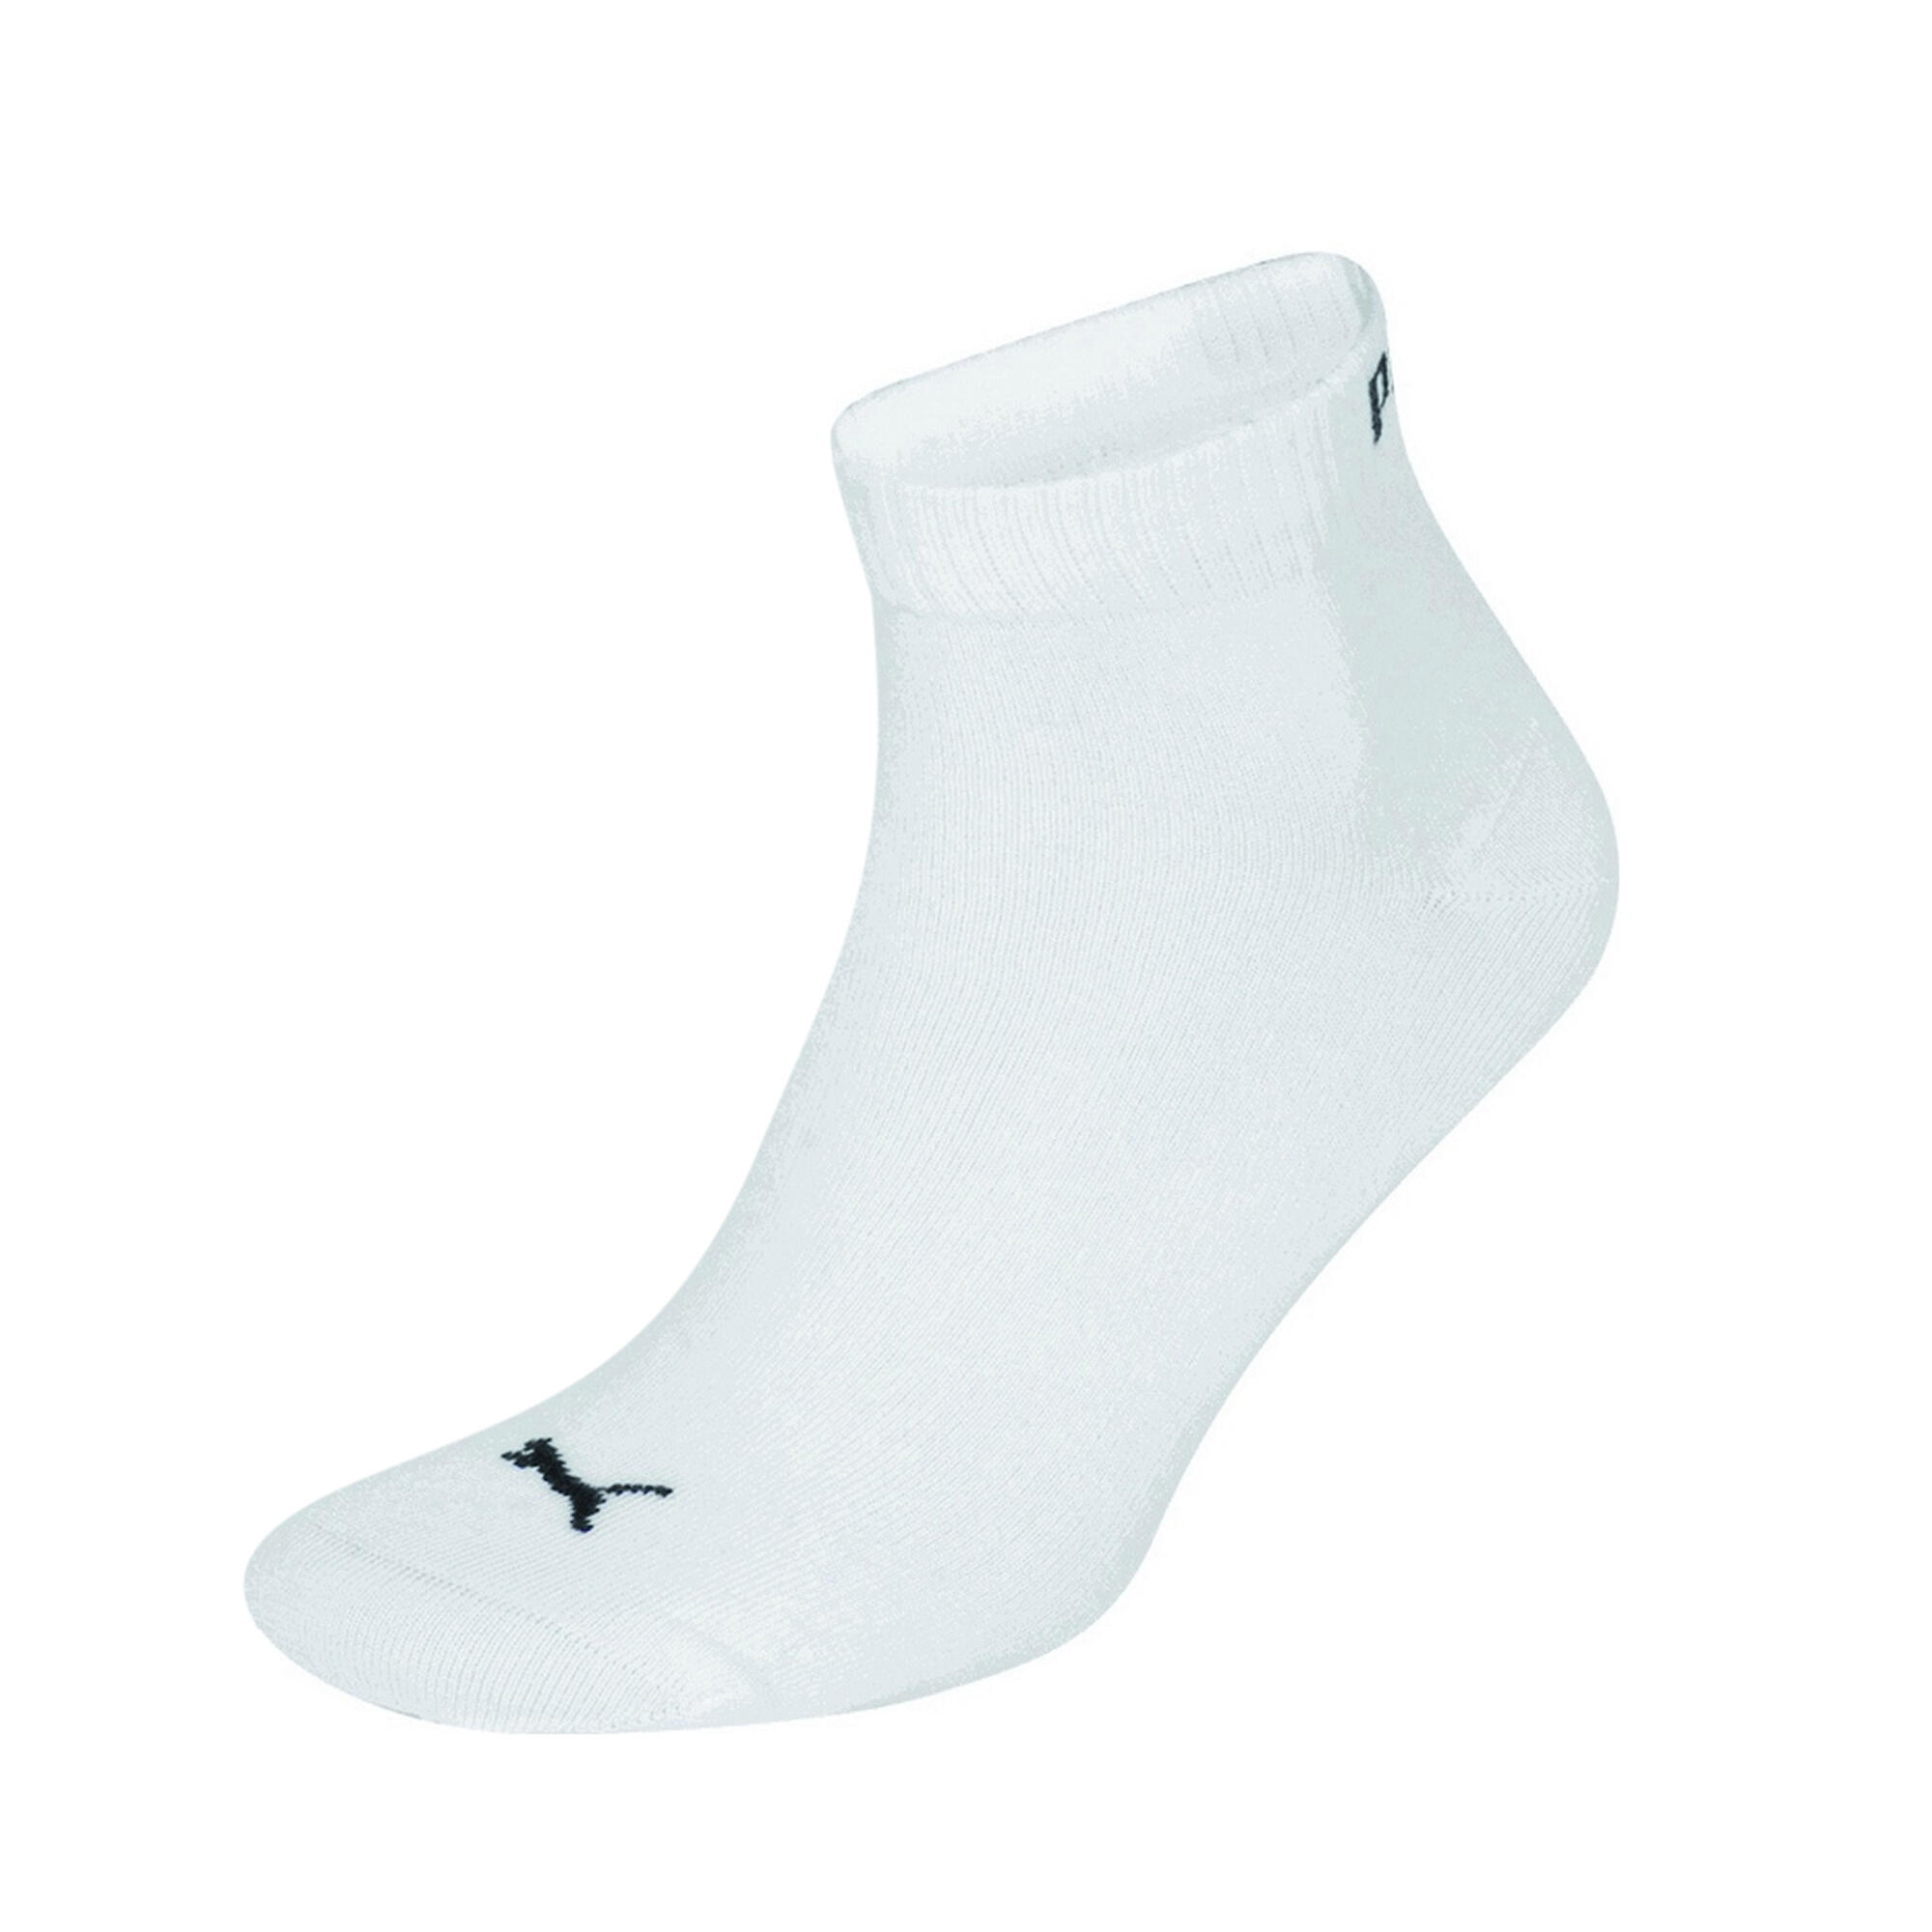 PUMA Trainer Socks 3 Pair Pack / Mens Socks (White)